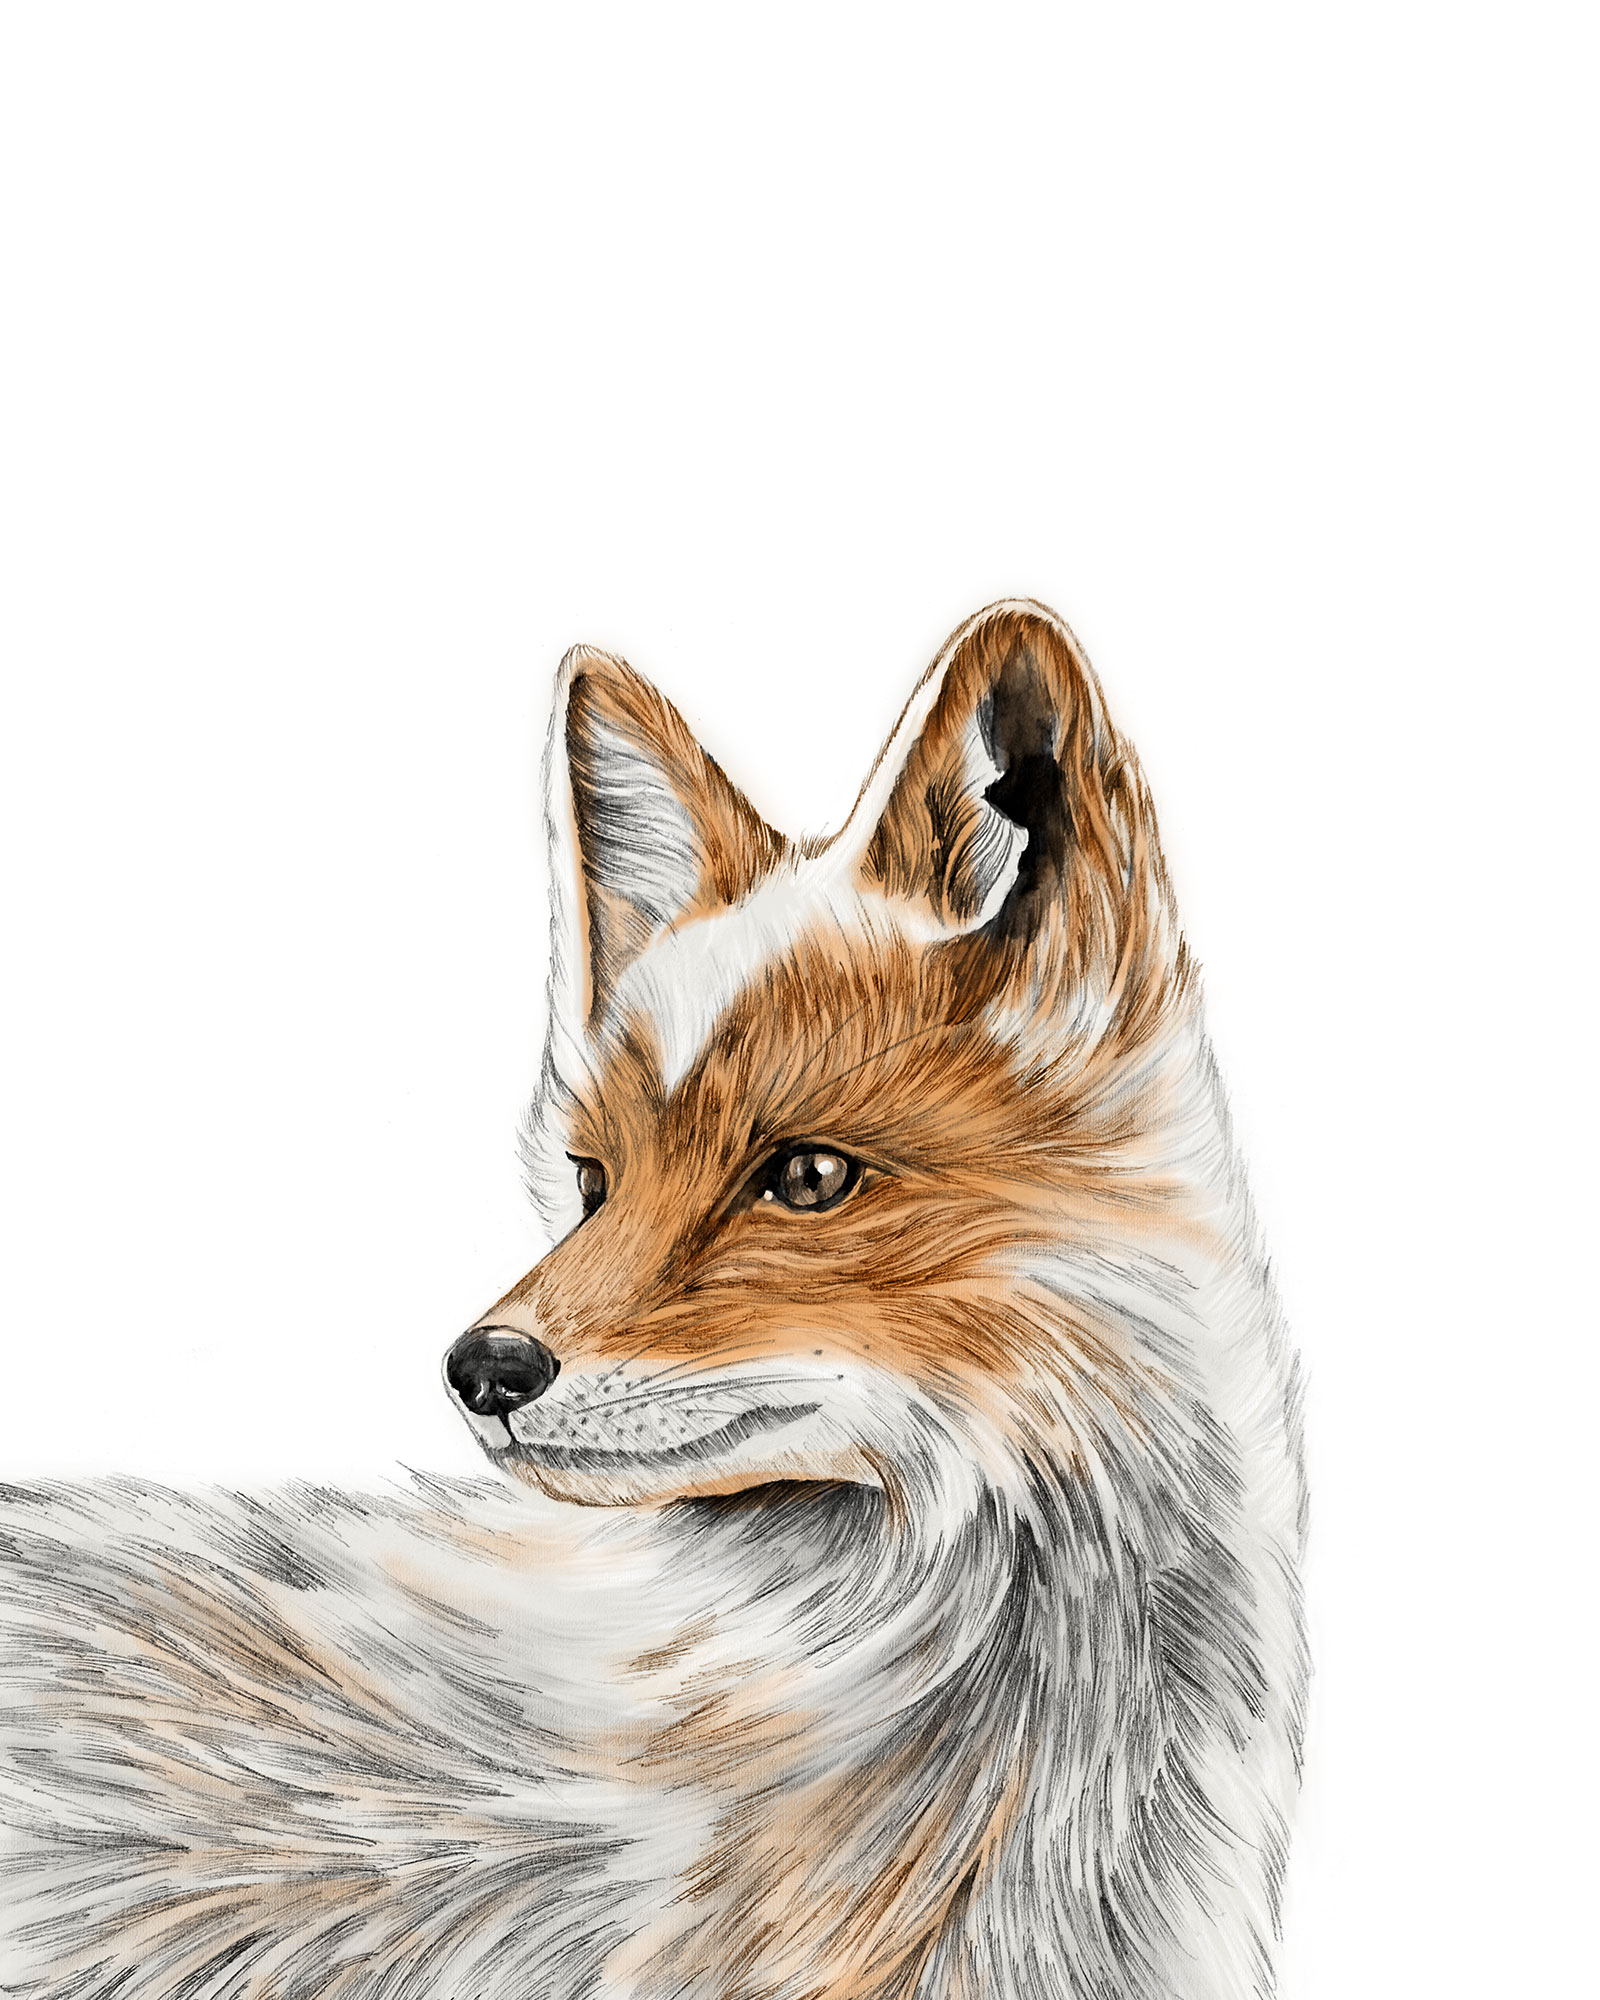 foxprintportrait8x10